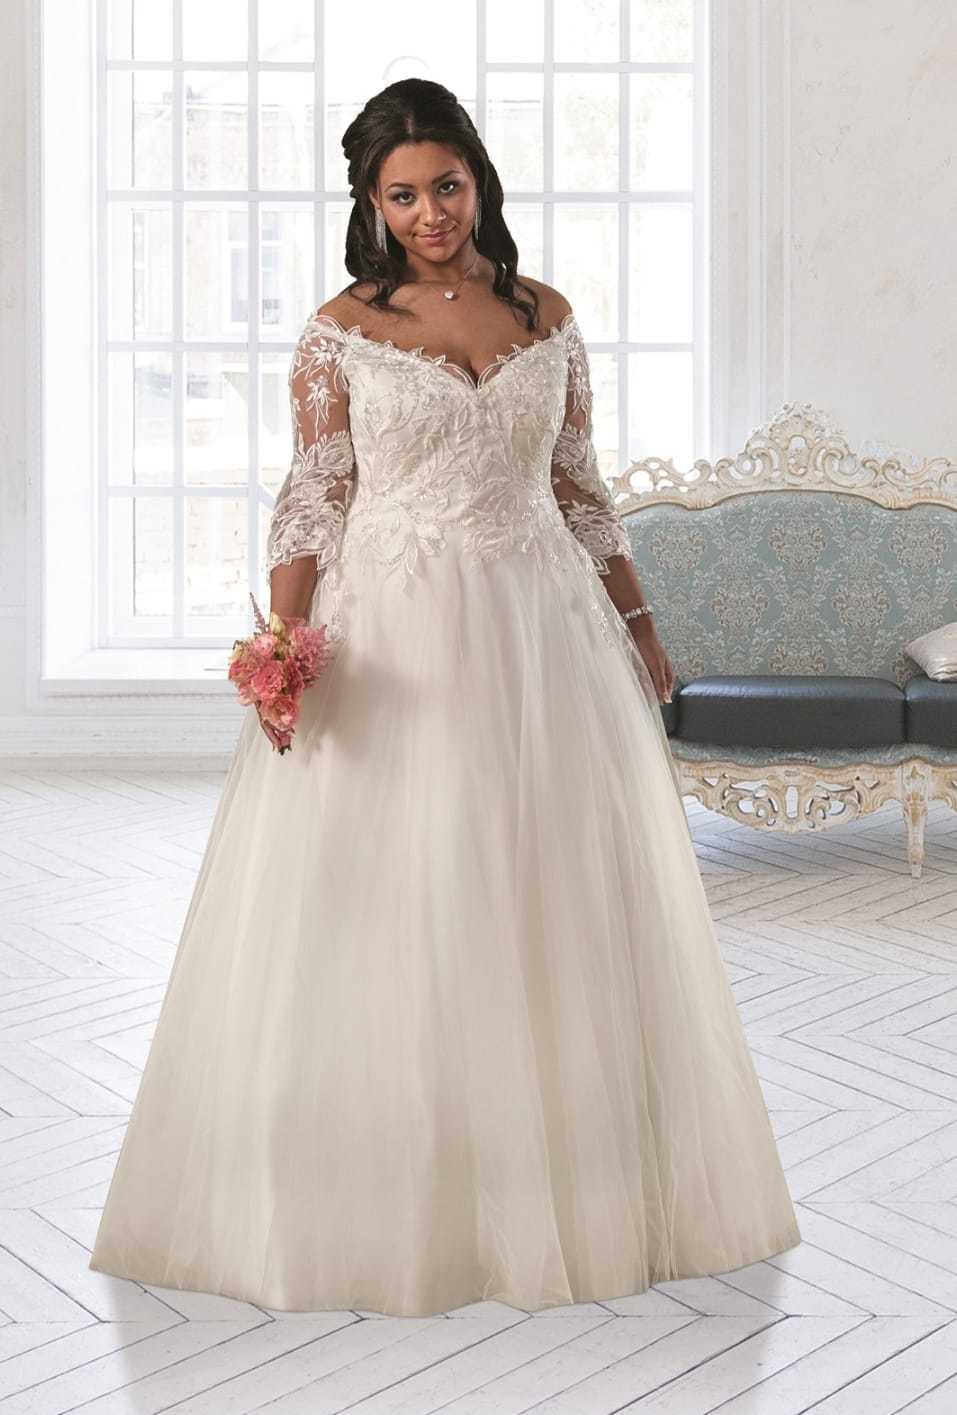 Sonsie Bridal Dress